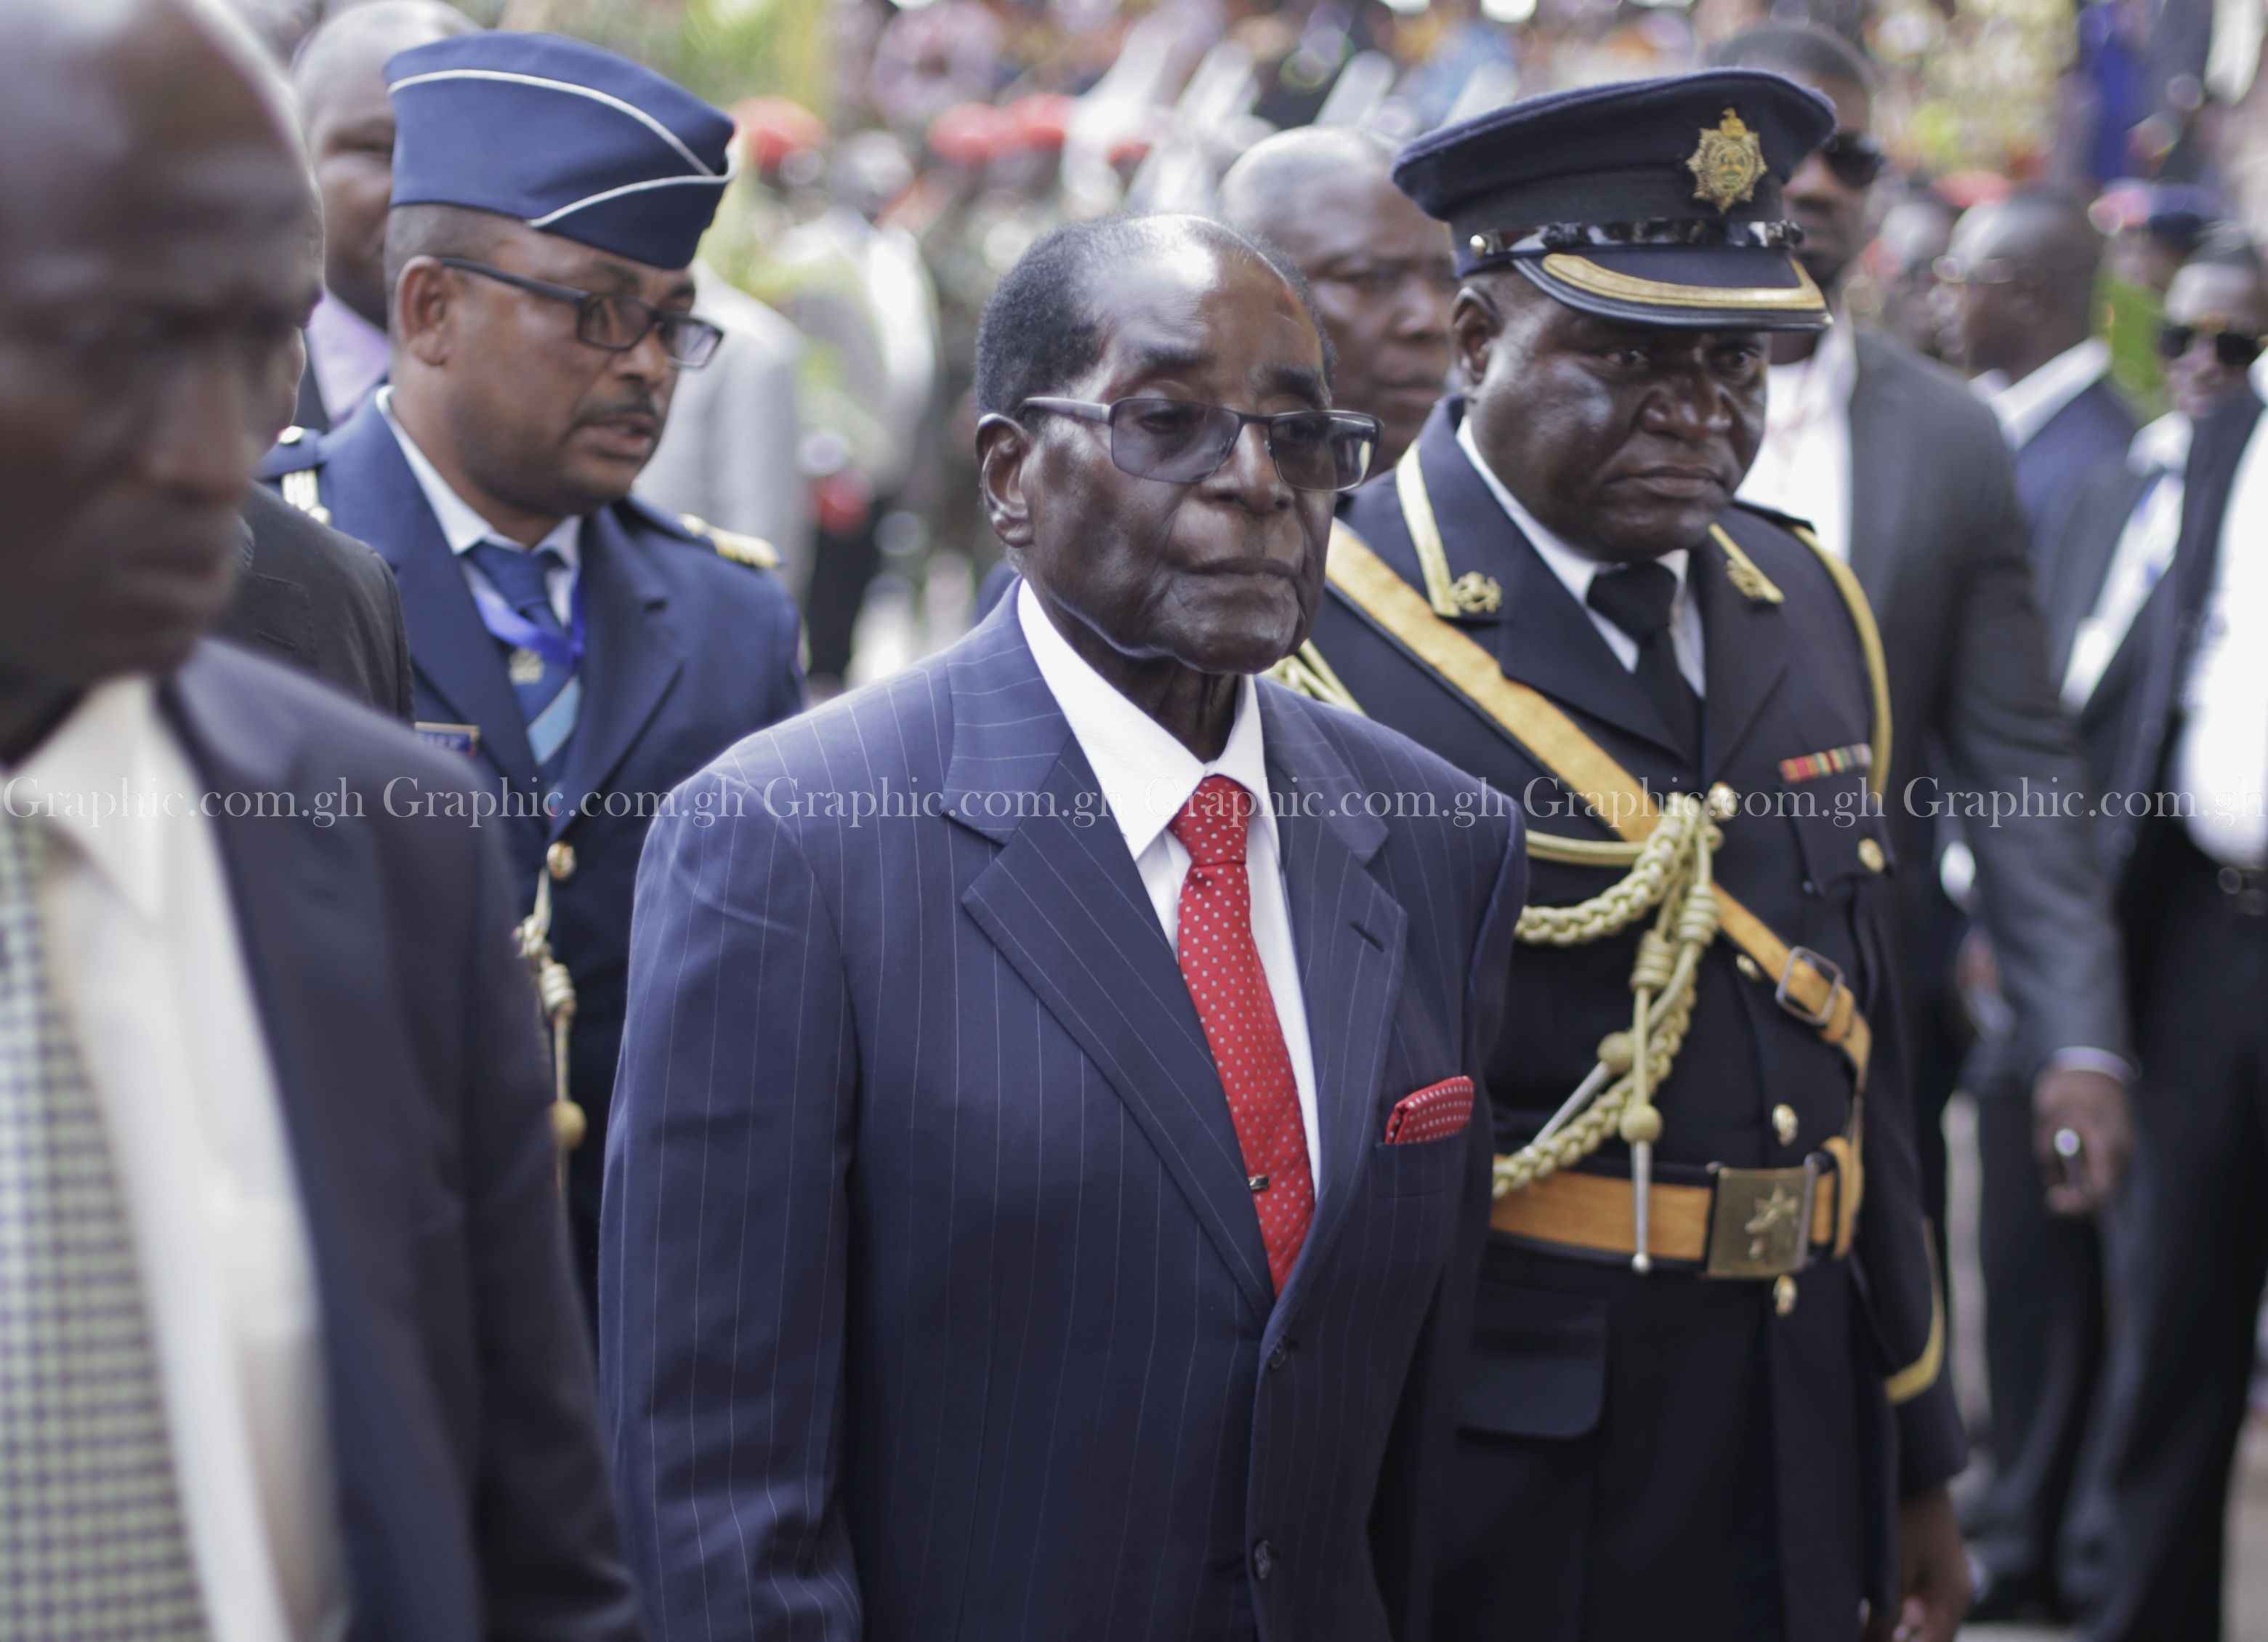 Zimbabwe crisis: Army takes over - Mugabe 'detained'